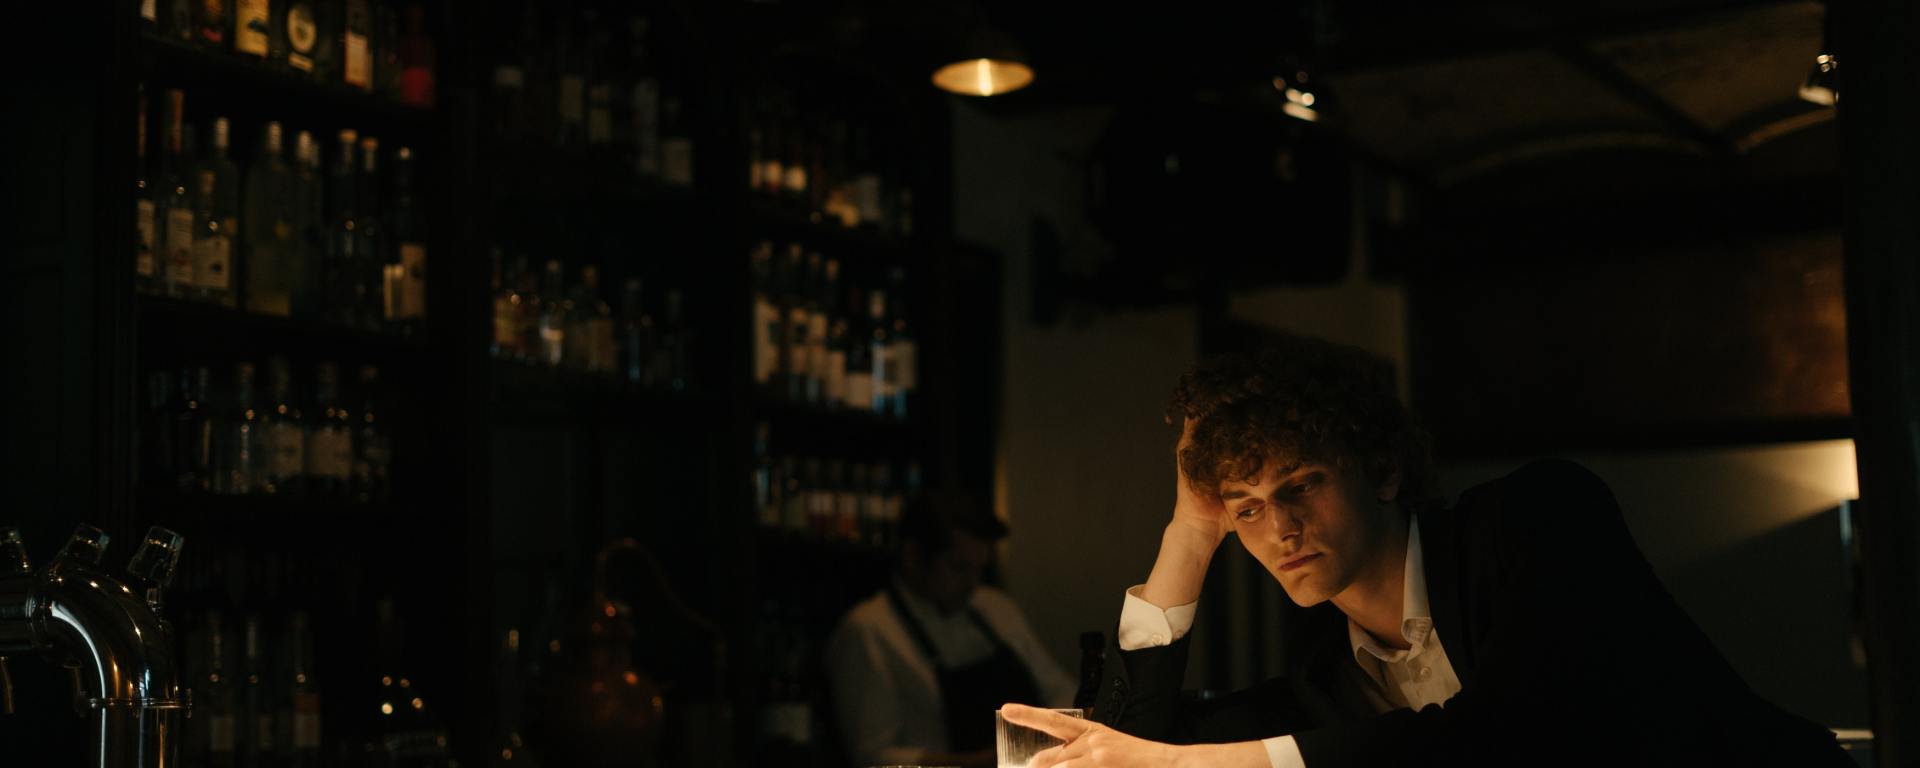 Hombre solo en la barra del bar, frente al vaso vacío